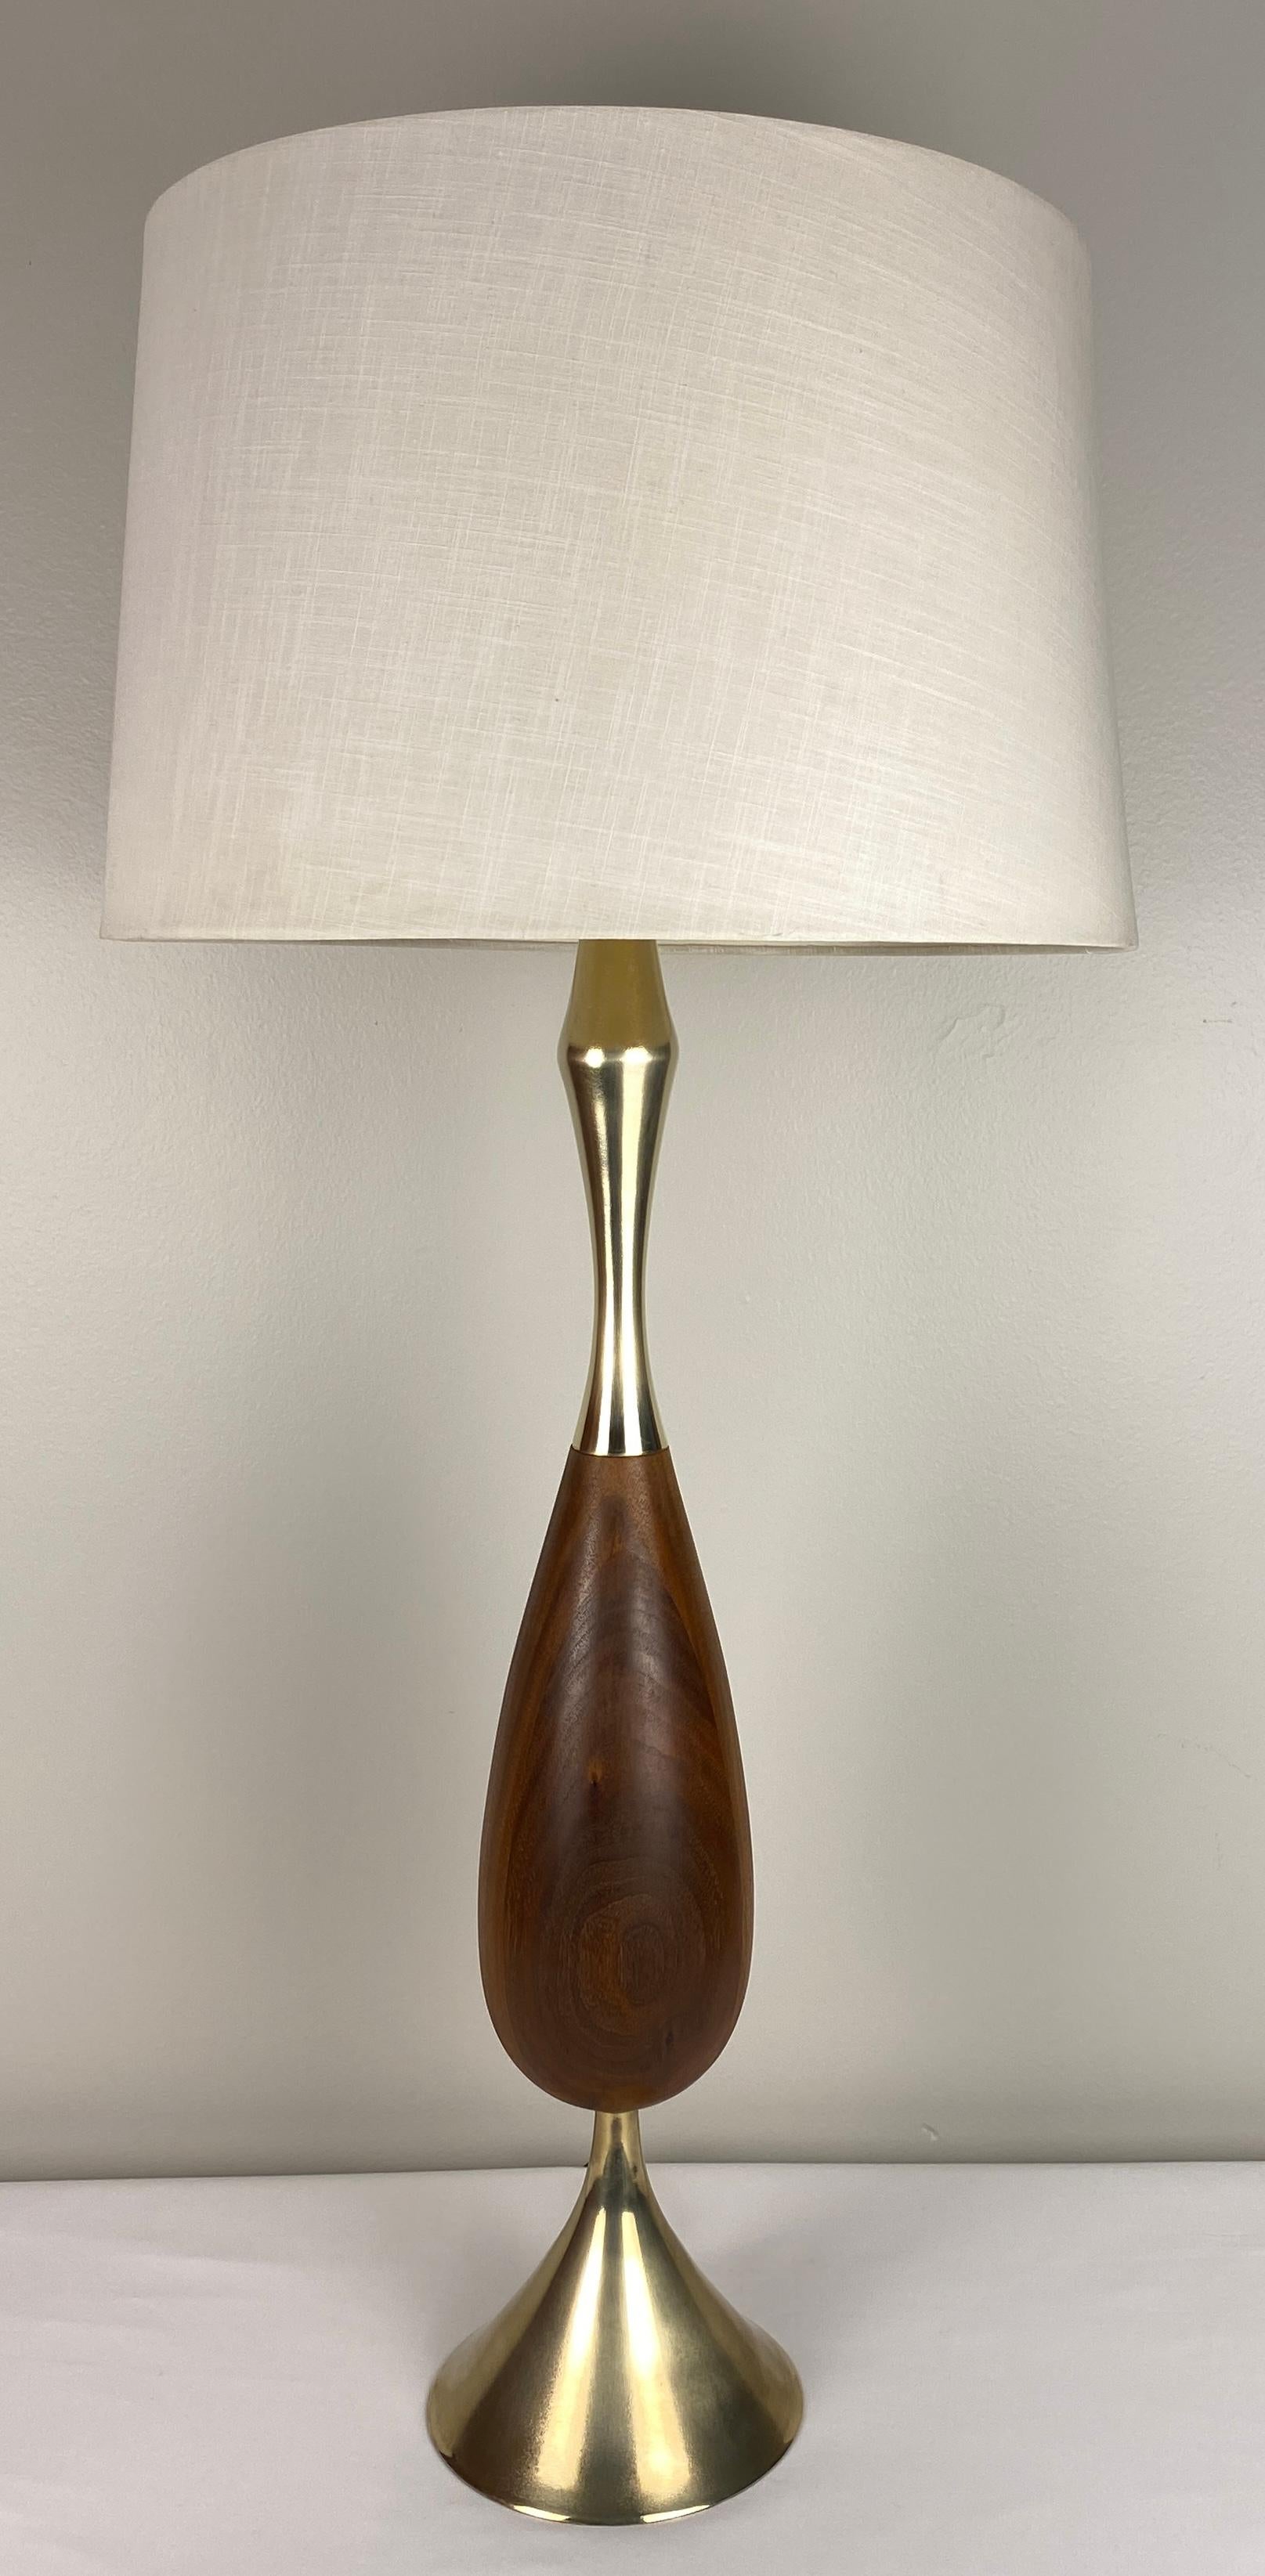 Une lampe de table très élégante de Tony Paul. 

Tony Paul était un designer industriel américain mondialement connu. Il est surtout connu pour ses conceptions de meubles, de vaisselle et d'éclairage.

Tony Paul a grandi dans le Bronx et a vécu